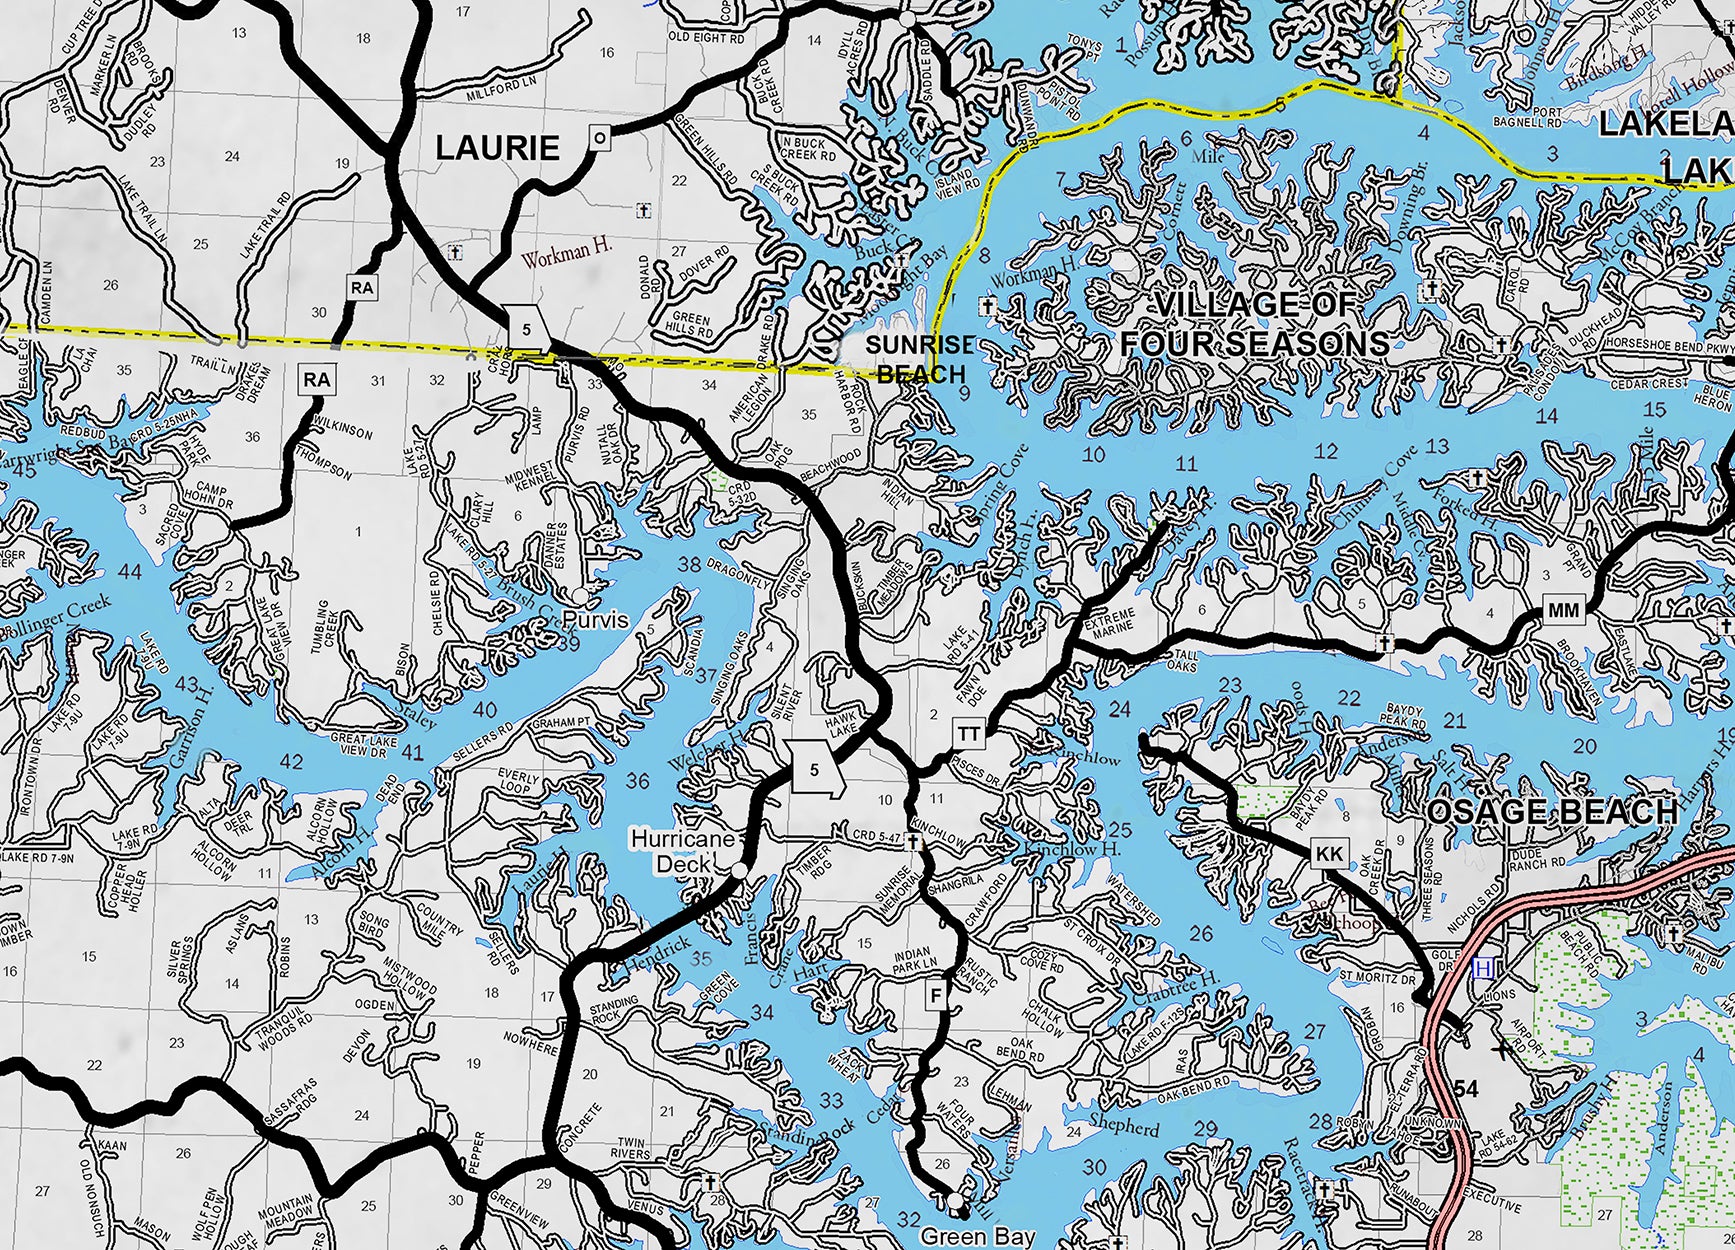 Lake of the ozarks mile marker map